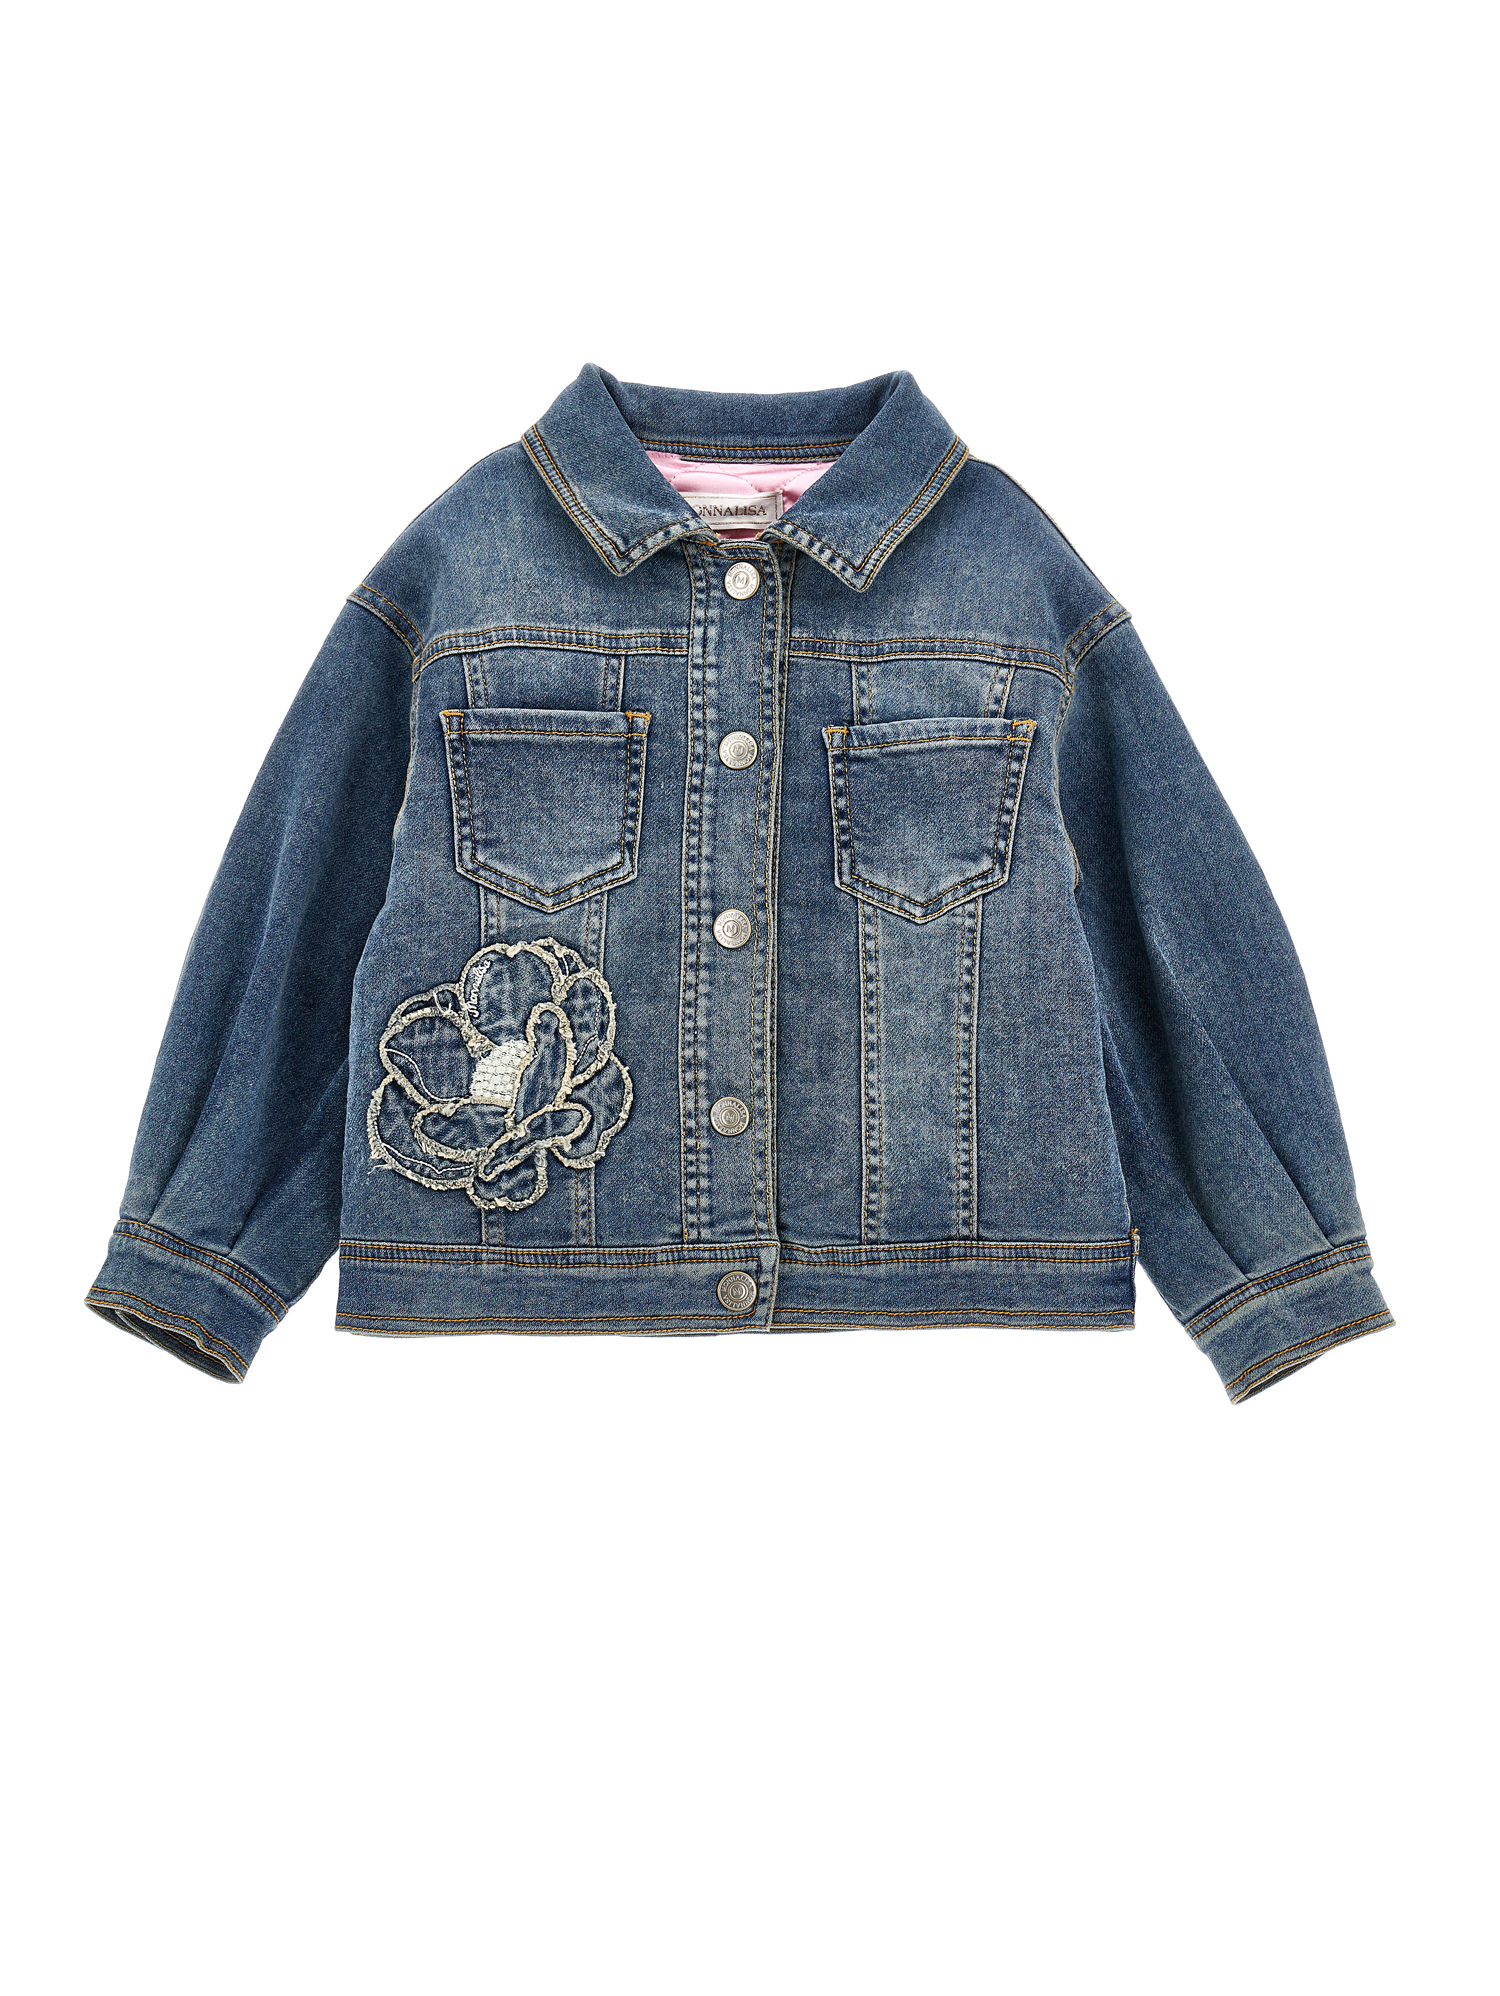 Monnalisa Kids'   Embroidered Denim Jacket In Denim Blue + Ecru